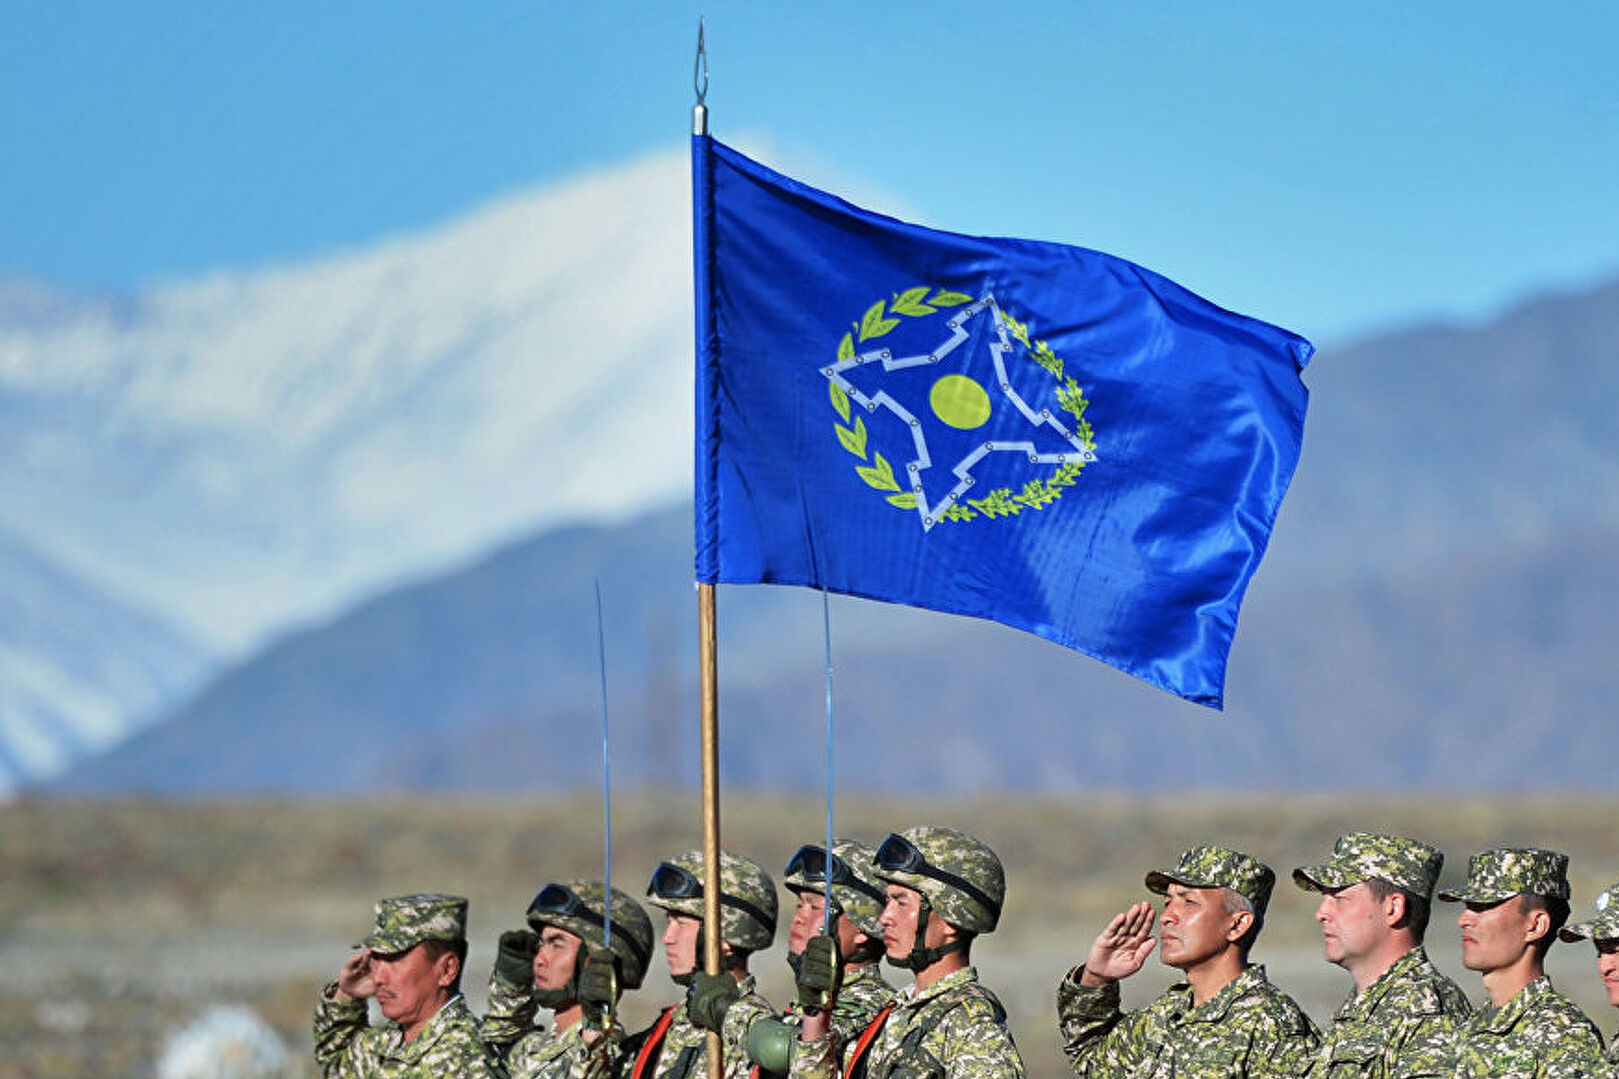 ՀԱՊԿ Հավաքական անվտանգության խորհուրդը հոկտեմբերի 28-ին կքննարկի Հայաստանին օգնություն ցուցաբերելու հարցը